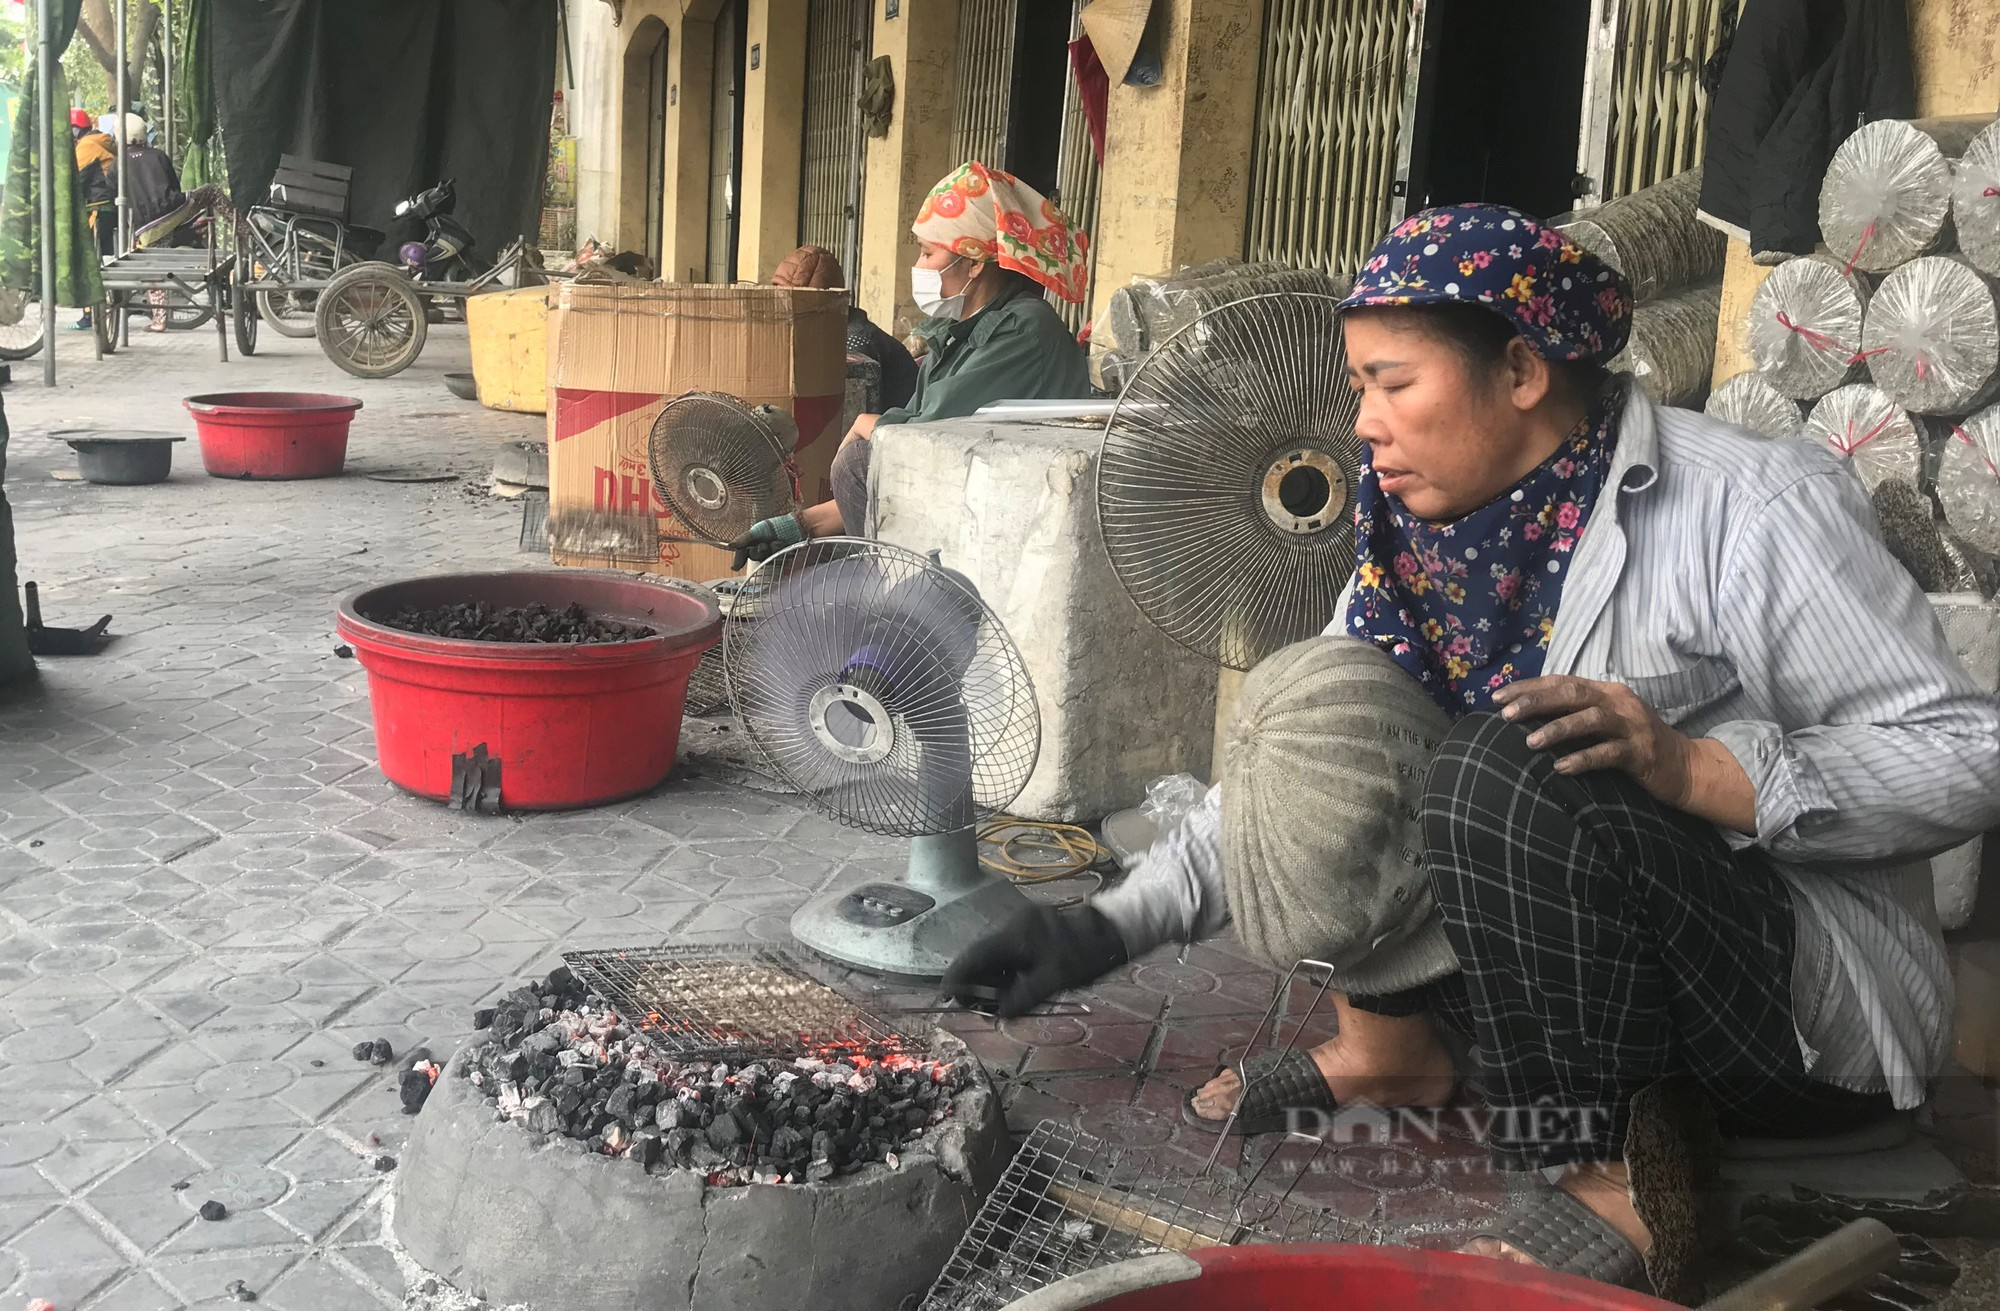 Làng nghề hơn 300 tuổi ở Nghệ An với những sản phẩm OCOP 3 sao, đỏ lửa suốt ngày đêm vẫn không đủ hàng Tết - Ảnh 7.